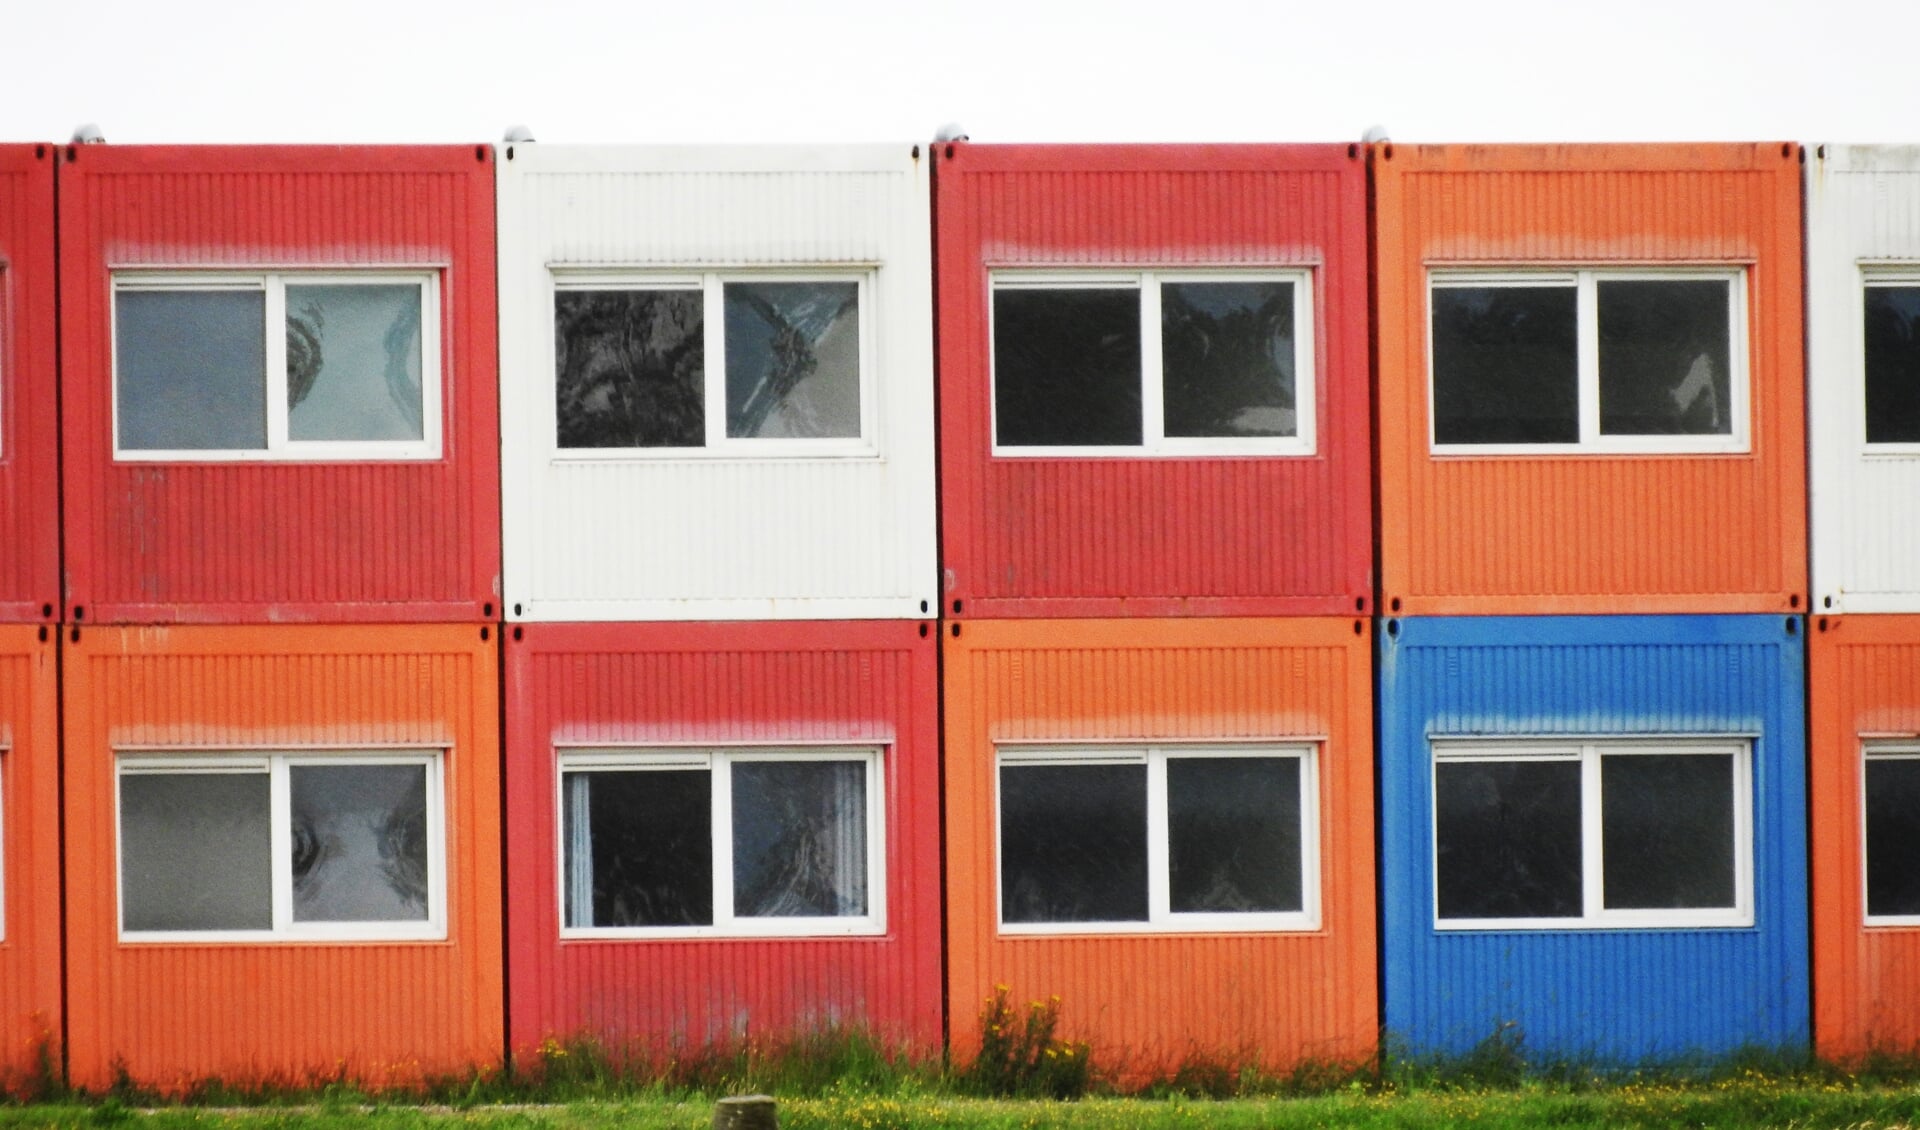 Flex-containers ofwel flexwoningen als tijdelijke woonvoorziening in gemeente Castricum. Een goed idee? Stuur een reactie naar redactie.cnb@rodi.nl